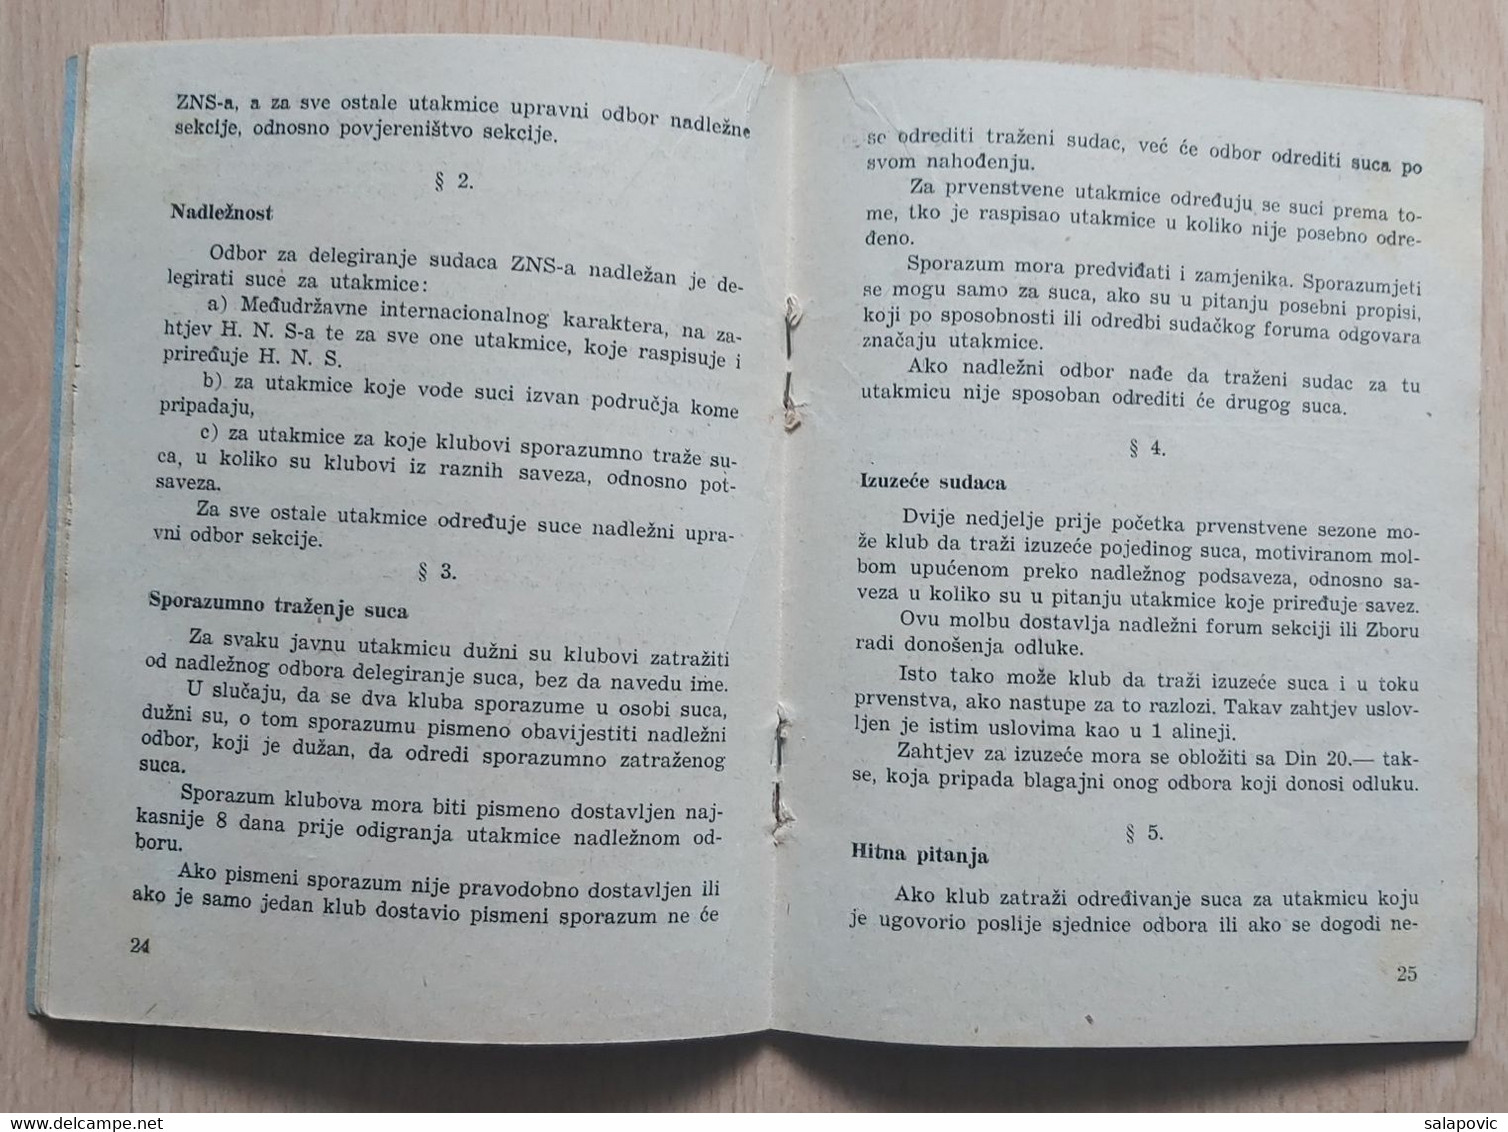 PRAVILA ZBORA NOGOMETNIH SUDACA HRVATSKOG NOGOMETNOG SAVEZA U ZAGREBU 1940  CROATIAN FOOTBALL FEDERATION - Libri